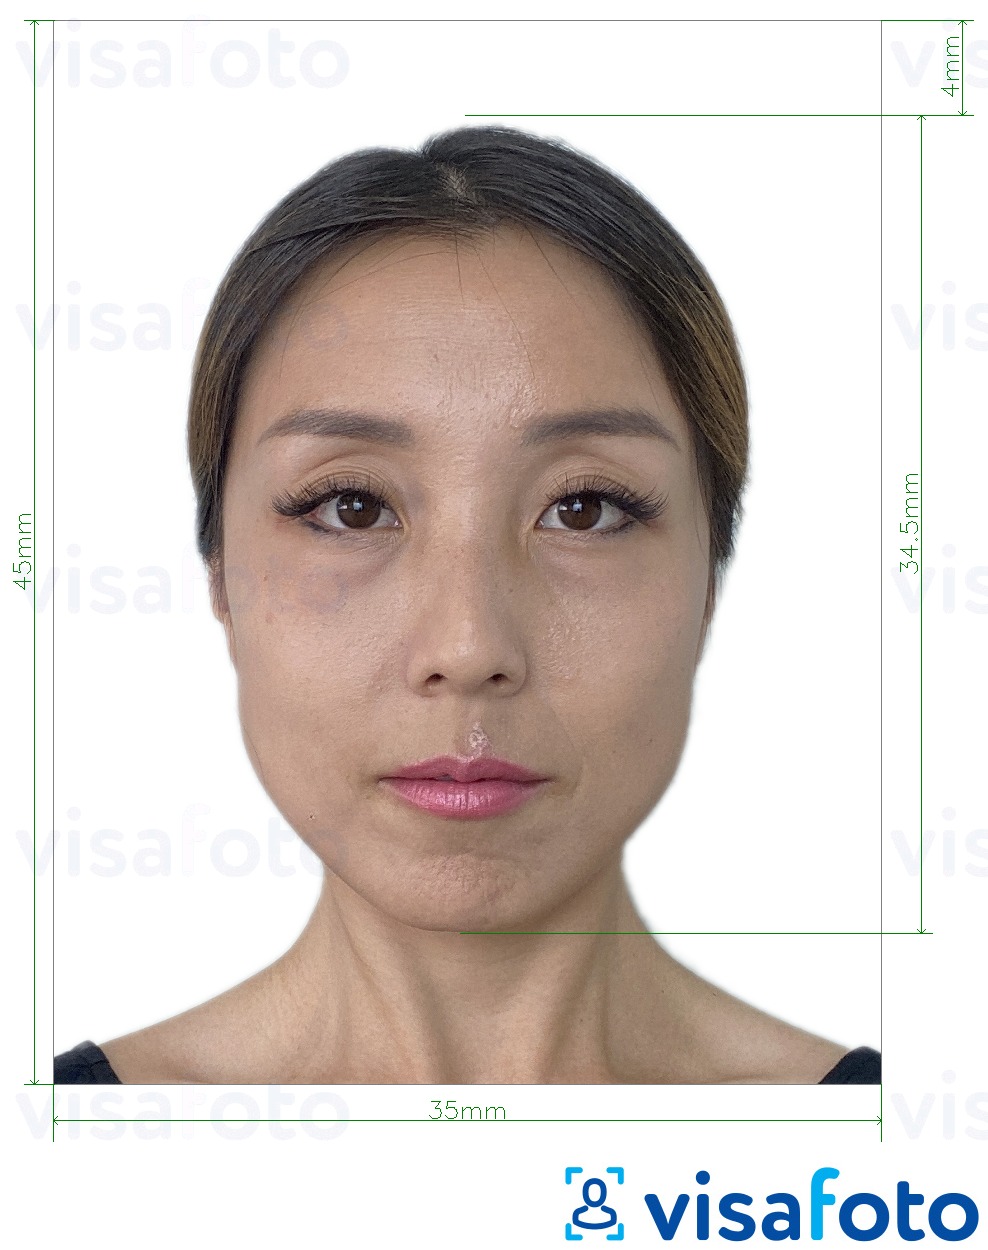 Eksempel på billede for Macau resident identitetskort (BIR) 45x35 mm med præcis størrelsesspecifikation.